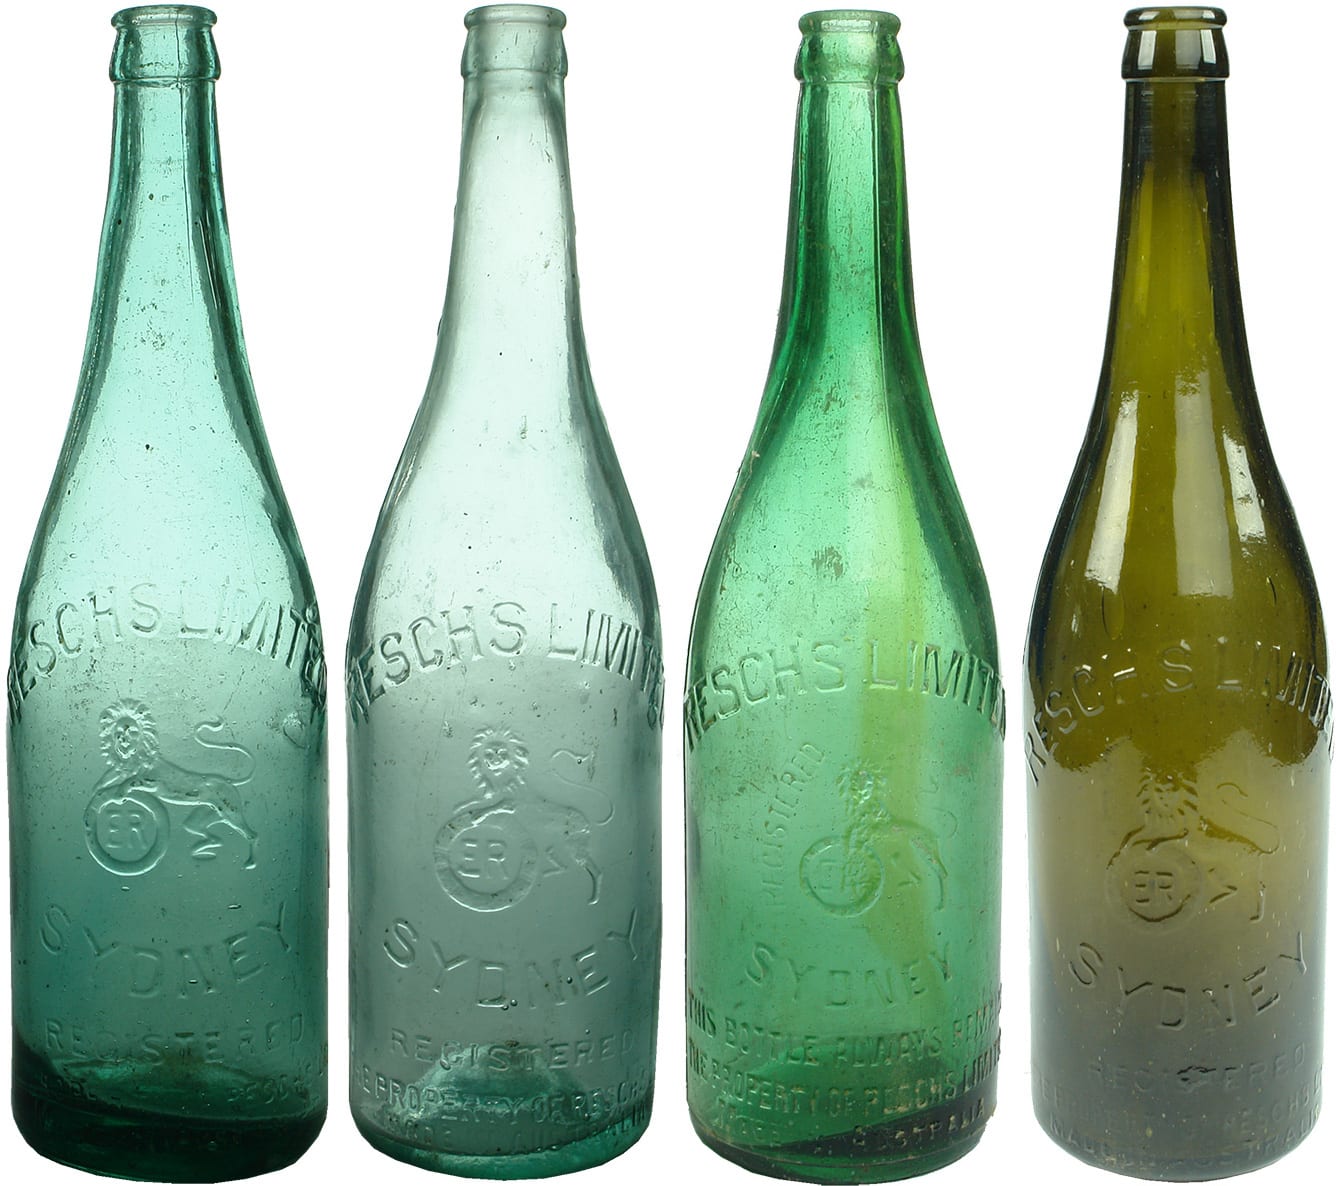 Resch's Limited Sydney Antique Beer Bottles